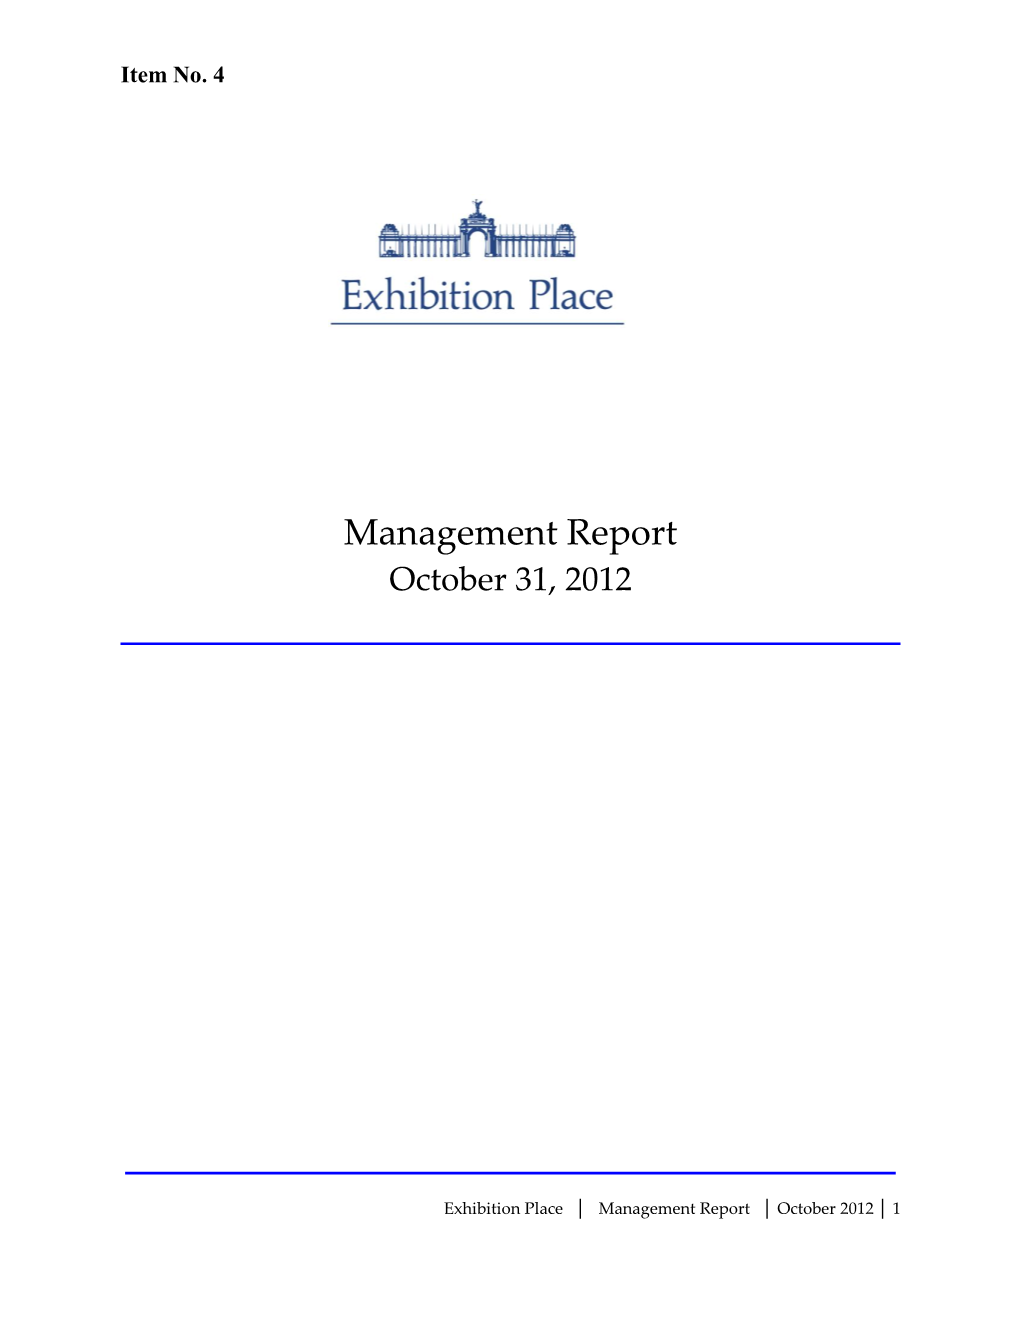 Exhibition Place Management Report